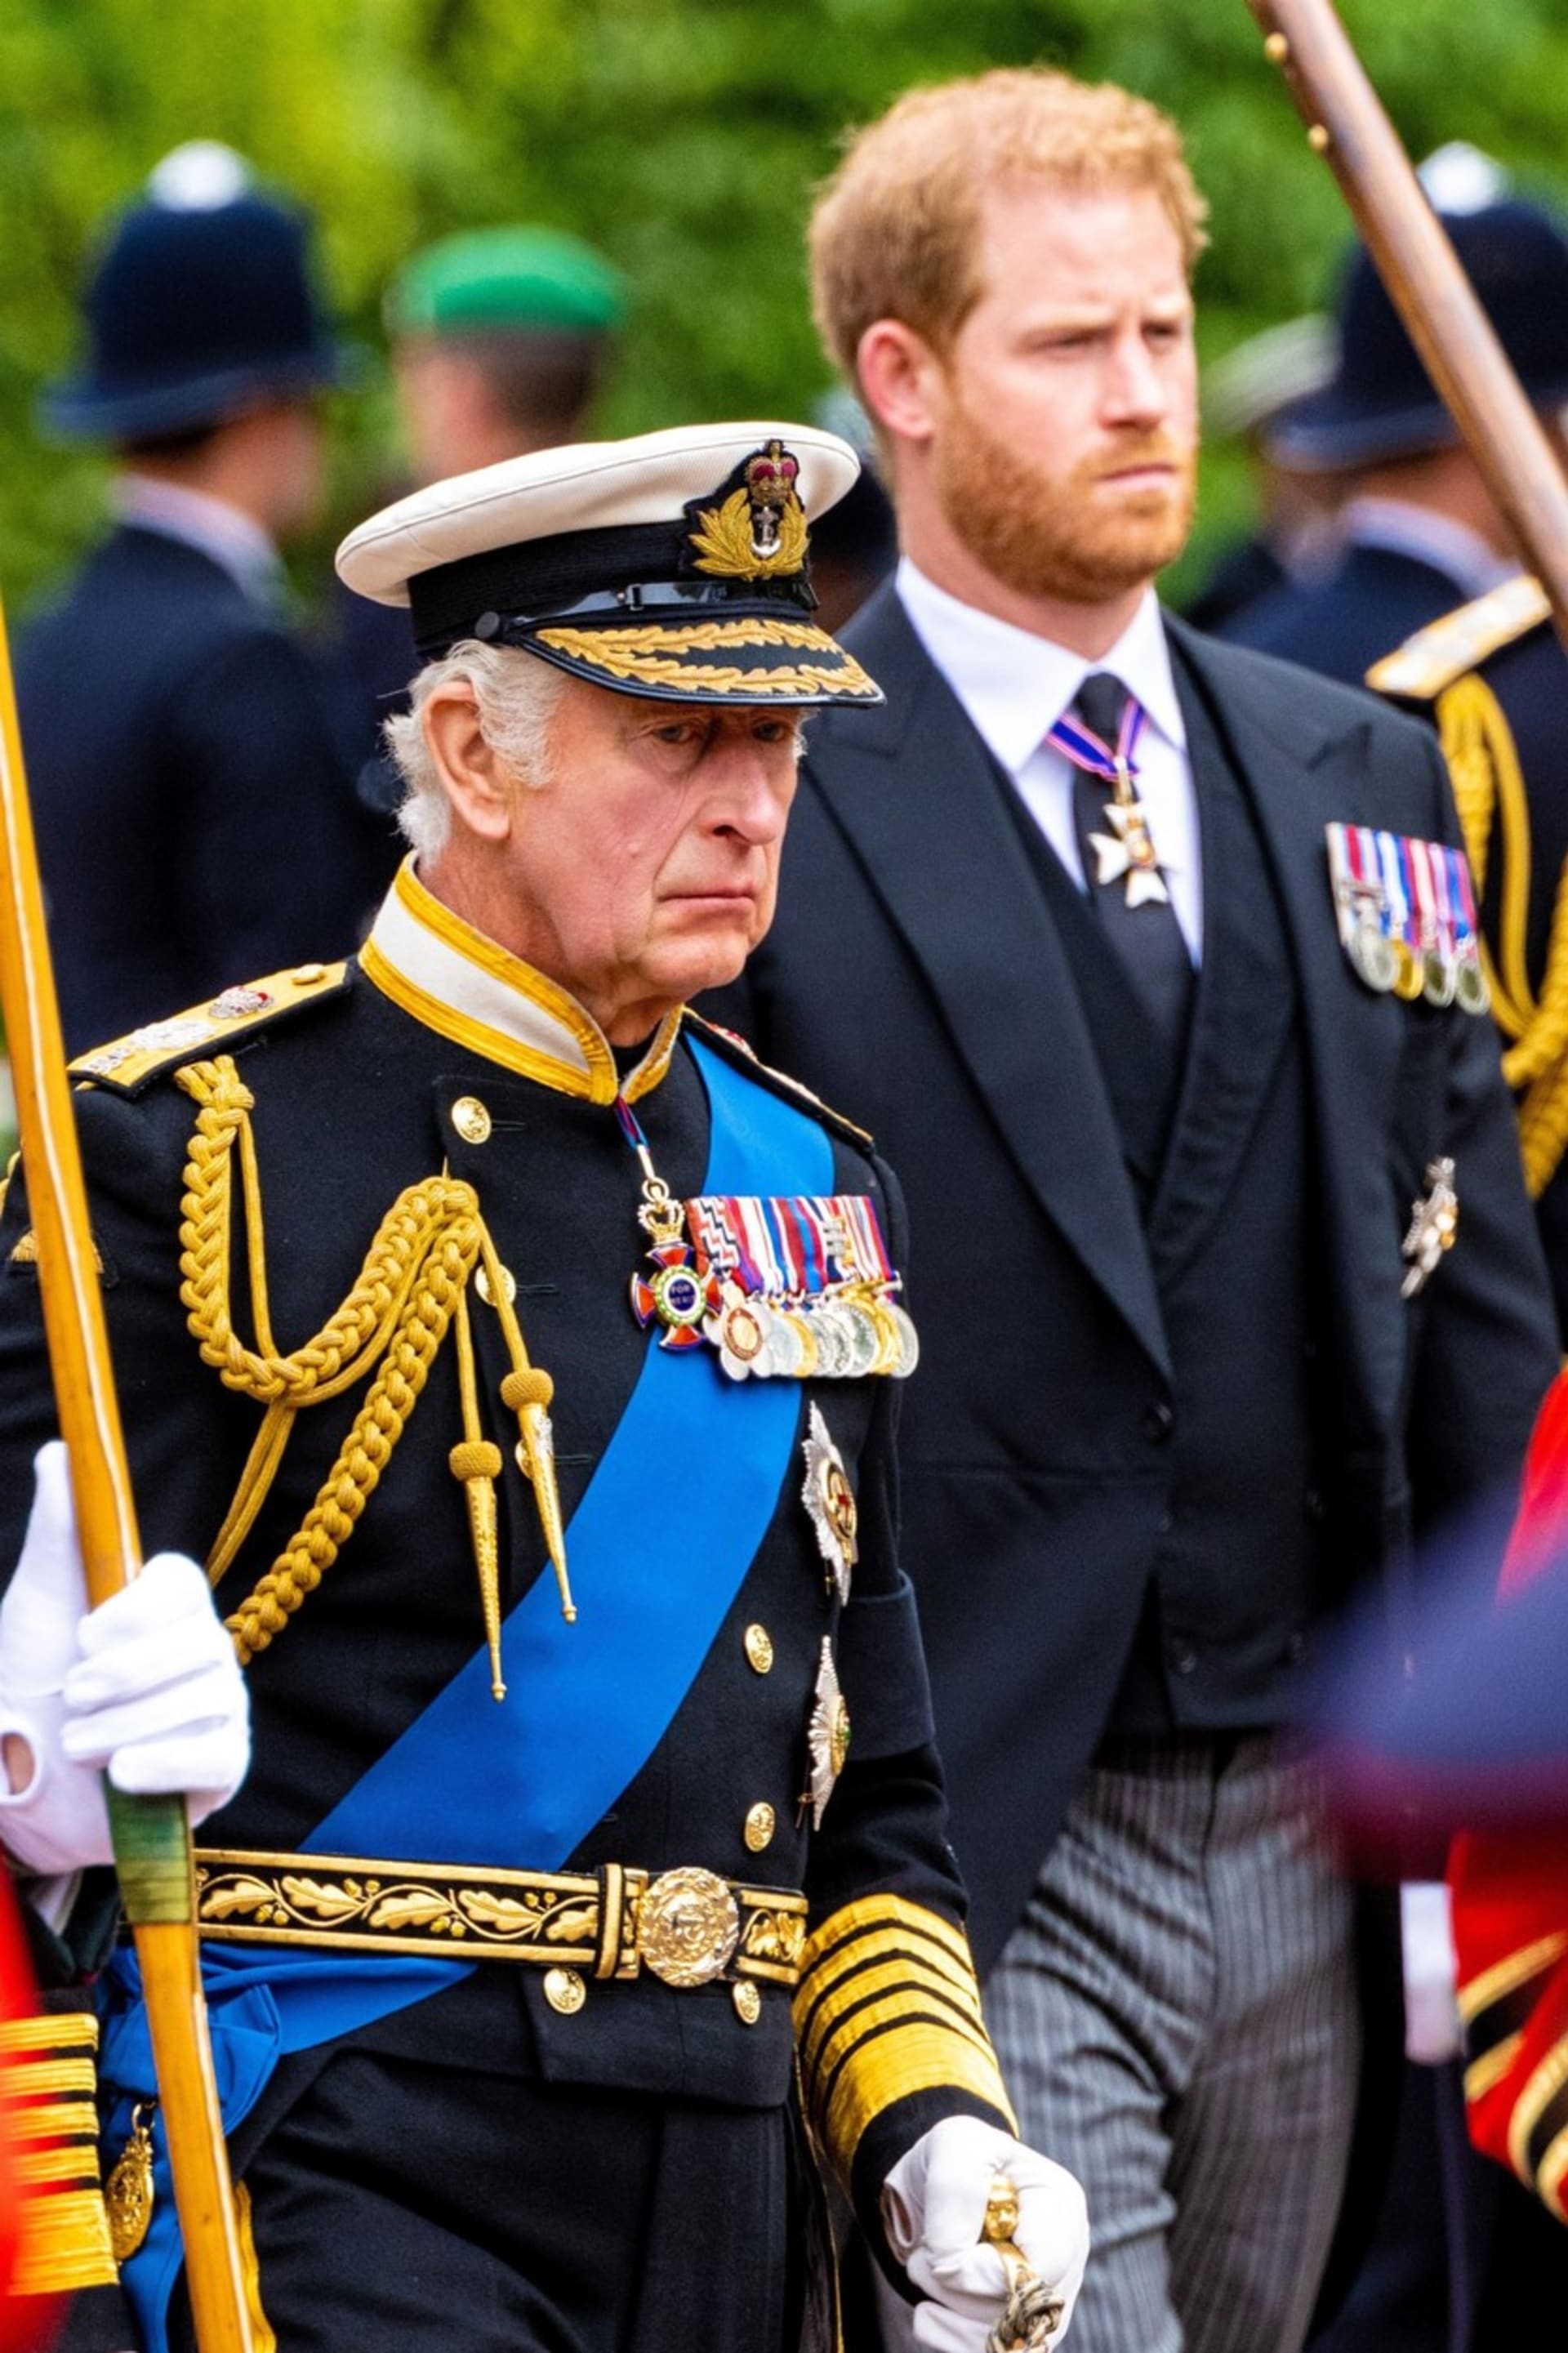 Král Karel III. měl mít také poznámky na barvu pleti tehdy ještě nenarozeného prince Archieho. 